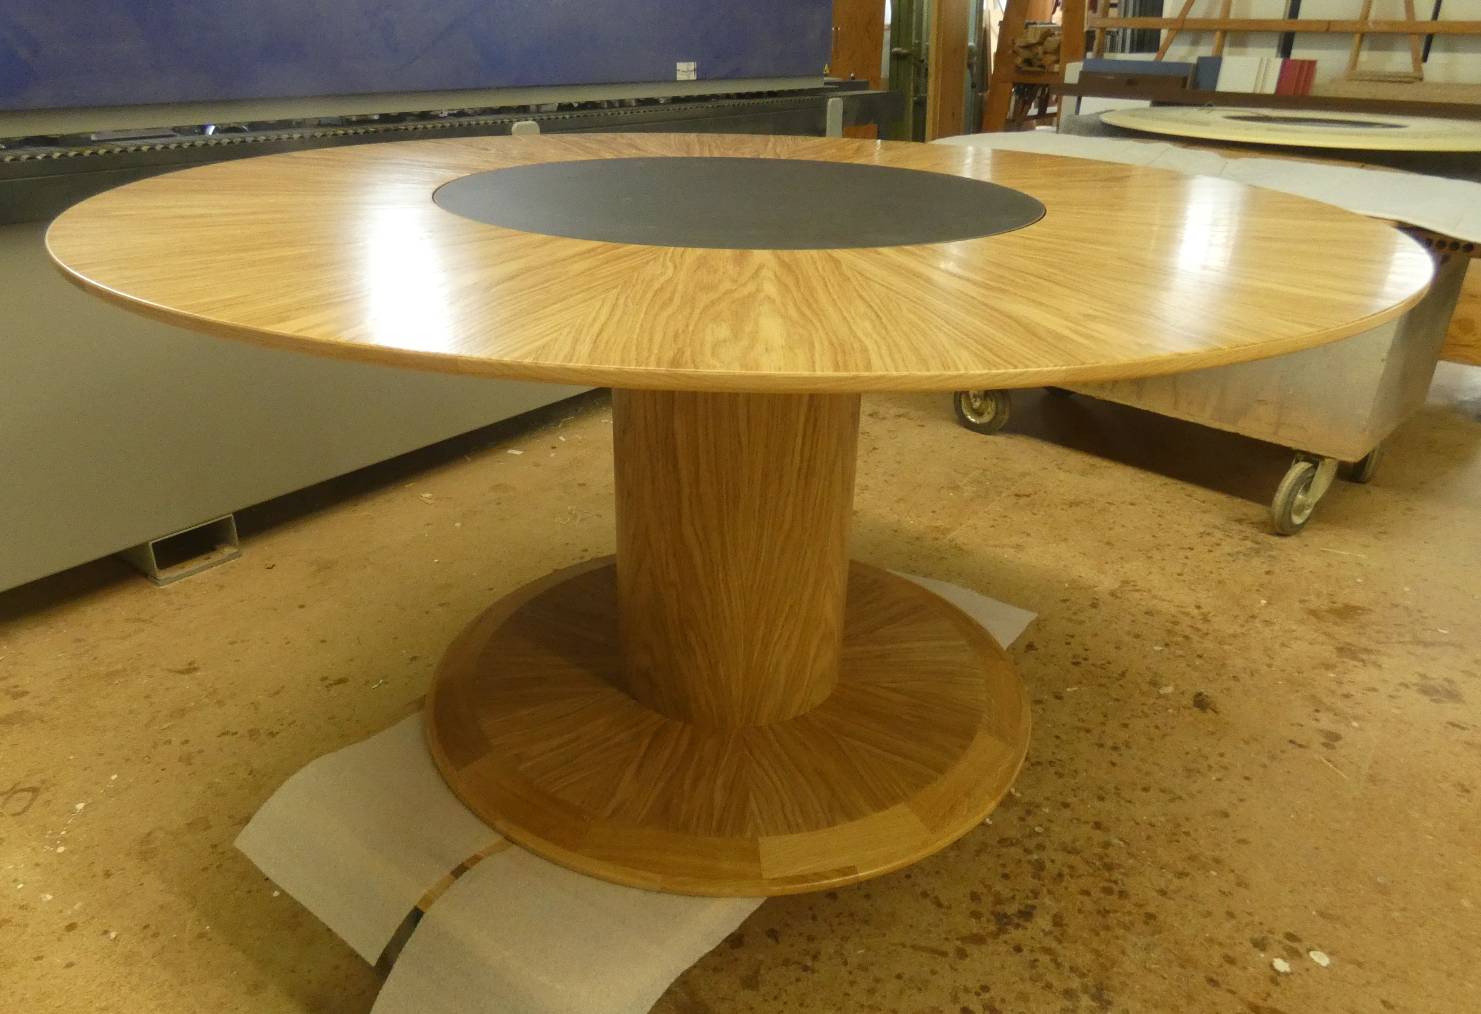 Ein runder Tisch soll in Ihr Heim? Der rotus der Tischlerei Schön GmbH aus Beeskow ist perfekt für Sie.